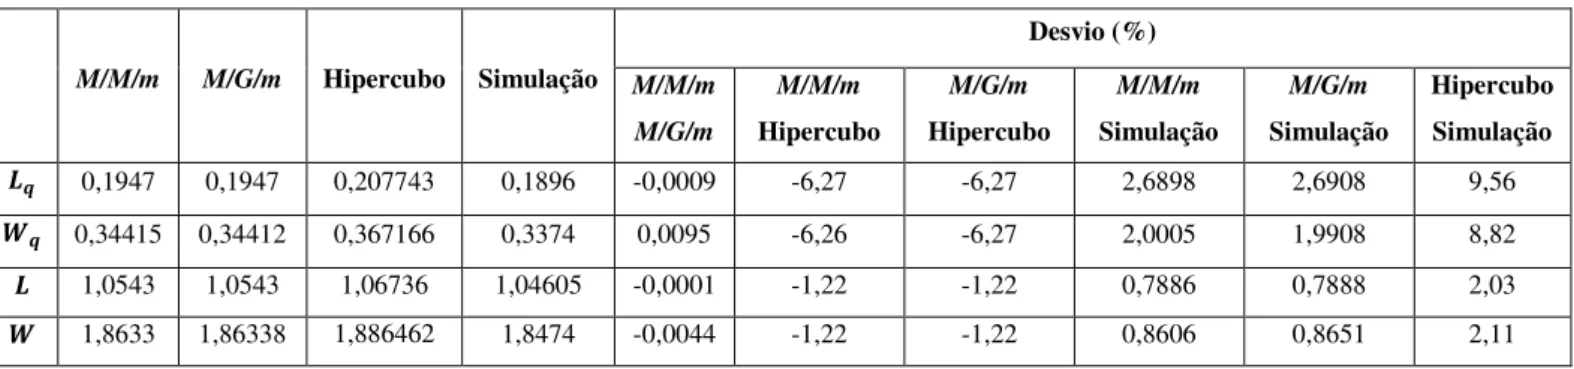 Tabela 15 – Resultados para os Modelos M/M/m, M/G/m, Hipercubo e de Simulação  M/M/m  M/G/m  Hipercubo  Simulação  Desvio (%)  M/M/m  M/G/m  M/M/m  Hipercubo  M/G/m  Hipercubo  M/M/m  Simulação  M/G/m  Simulação  Hipercubo Simulação  